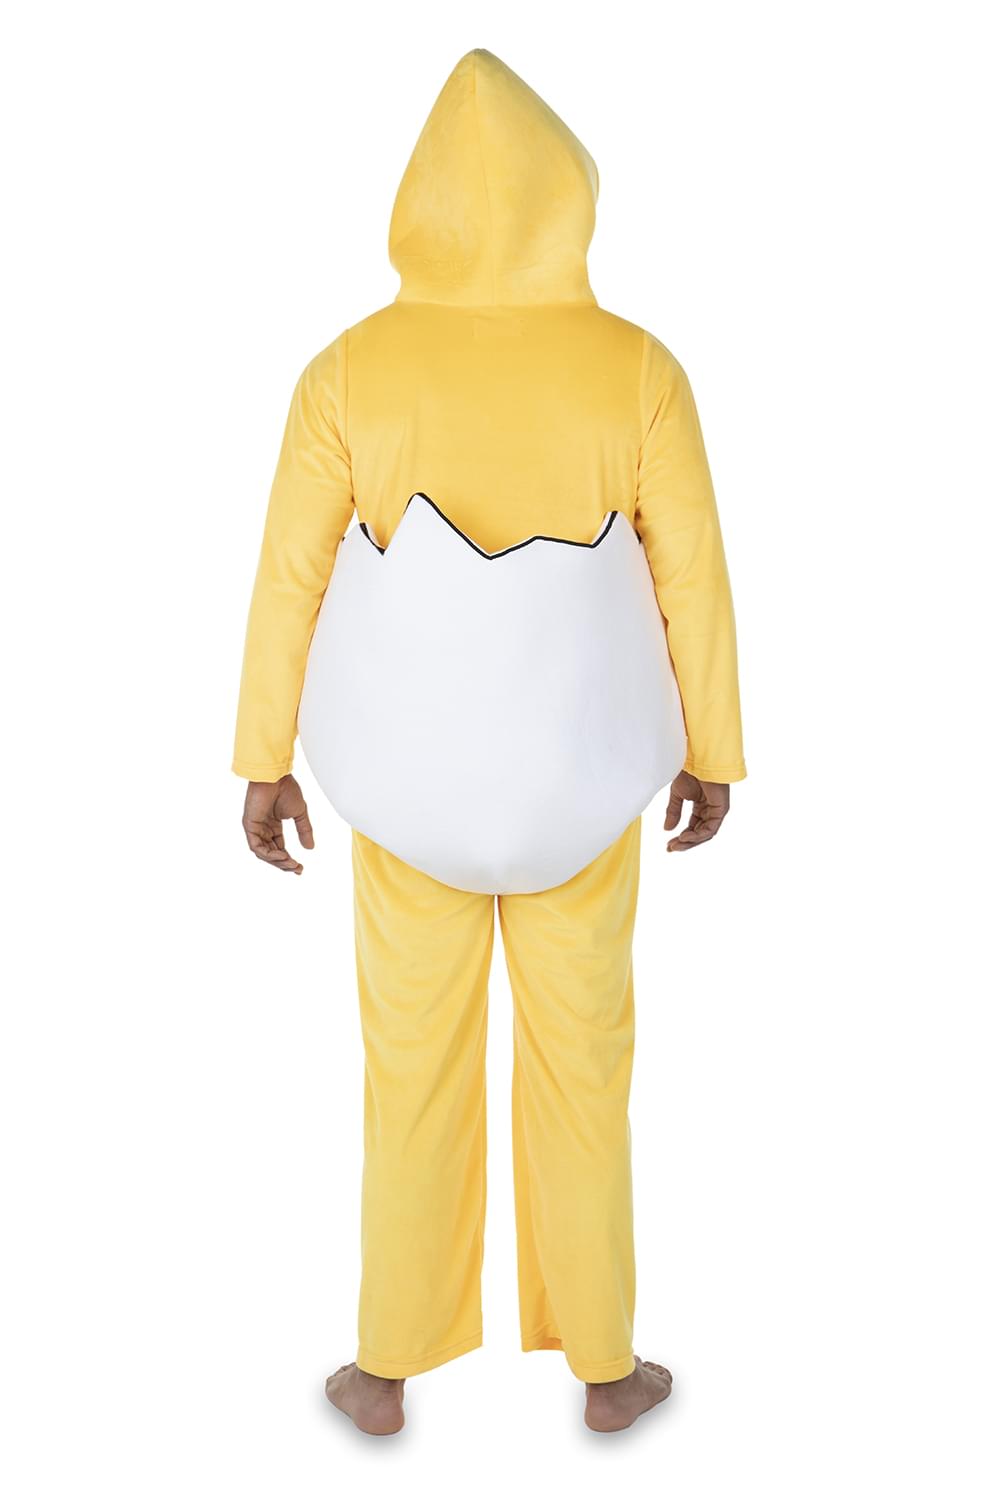 Sanrio Gudetama Adult Unisex Costume